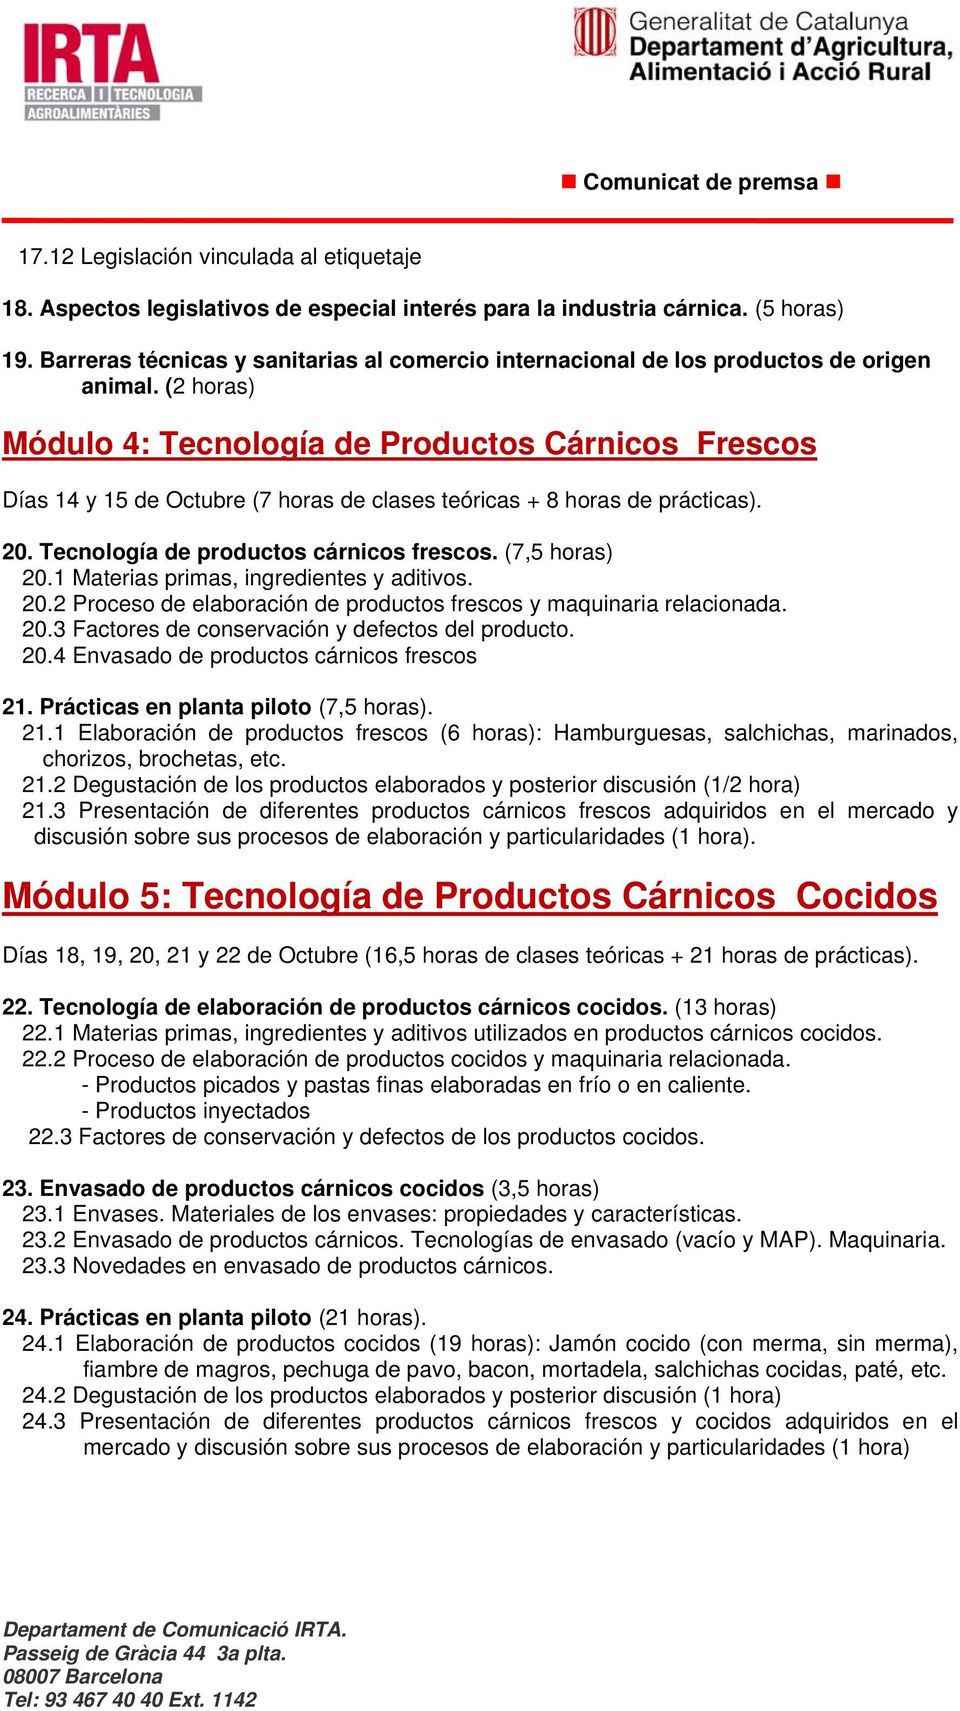 (2 horas) Módulo 4: Tecnología de Productos Cárnicos Frescos Días 14 y 15 de Octubre (7 horas de clases teóricas + 8 horas de prácticas). 20. Tecnología de productos cárnicos frescos. (7,5 horas) 20.